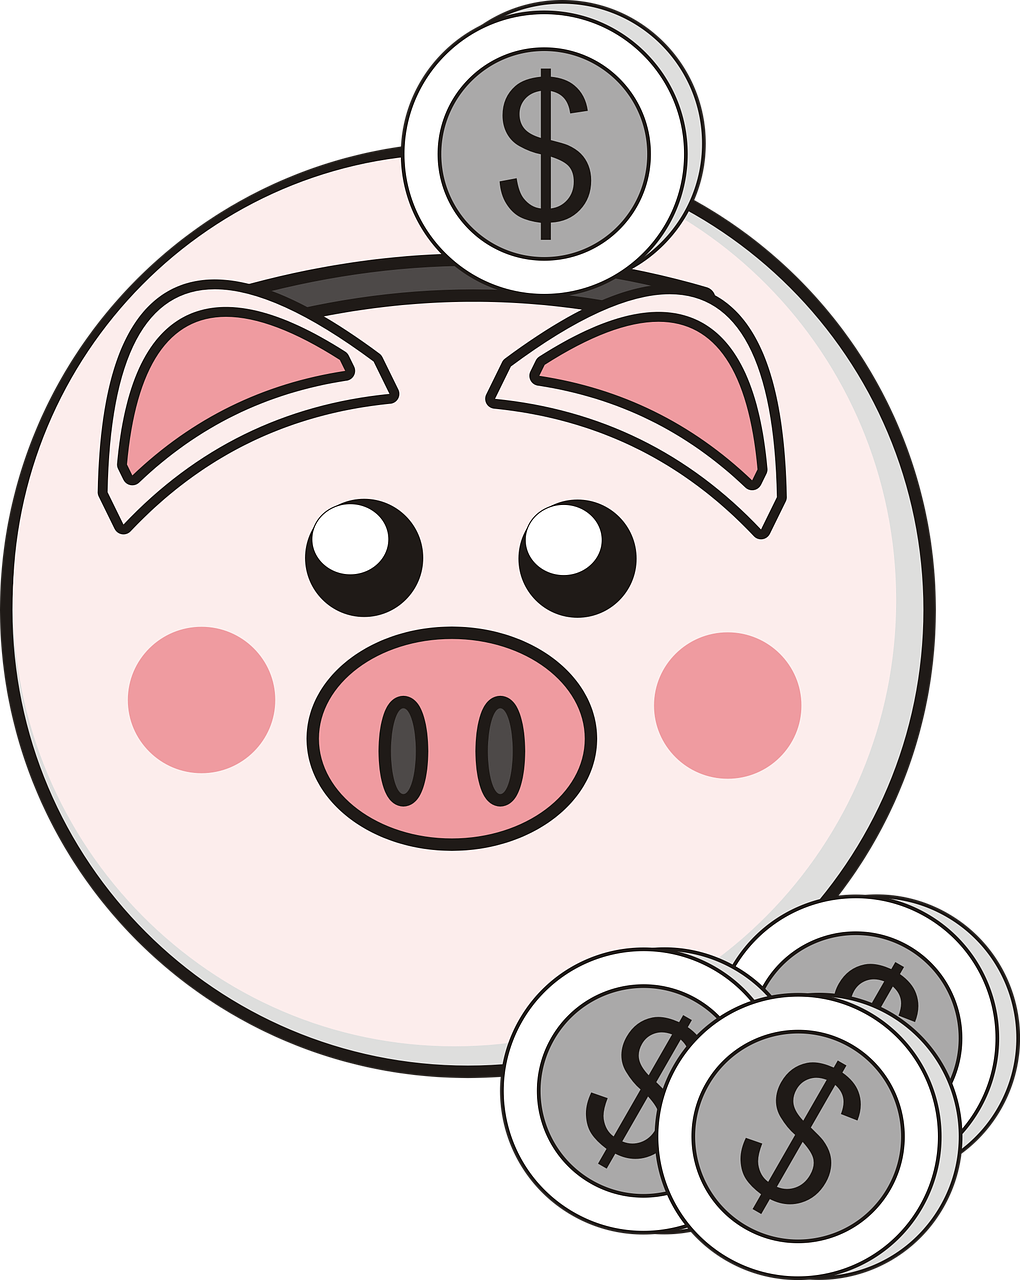 piggy bank, little pig, coins-1022852.jpg